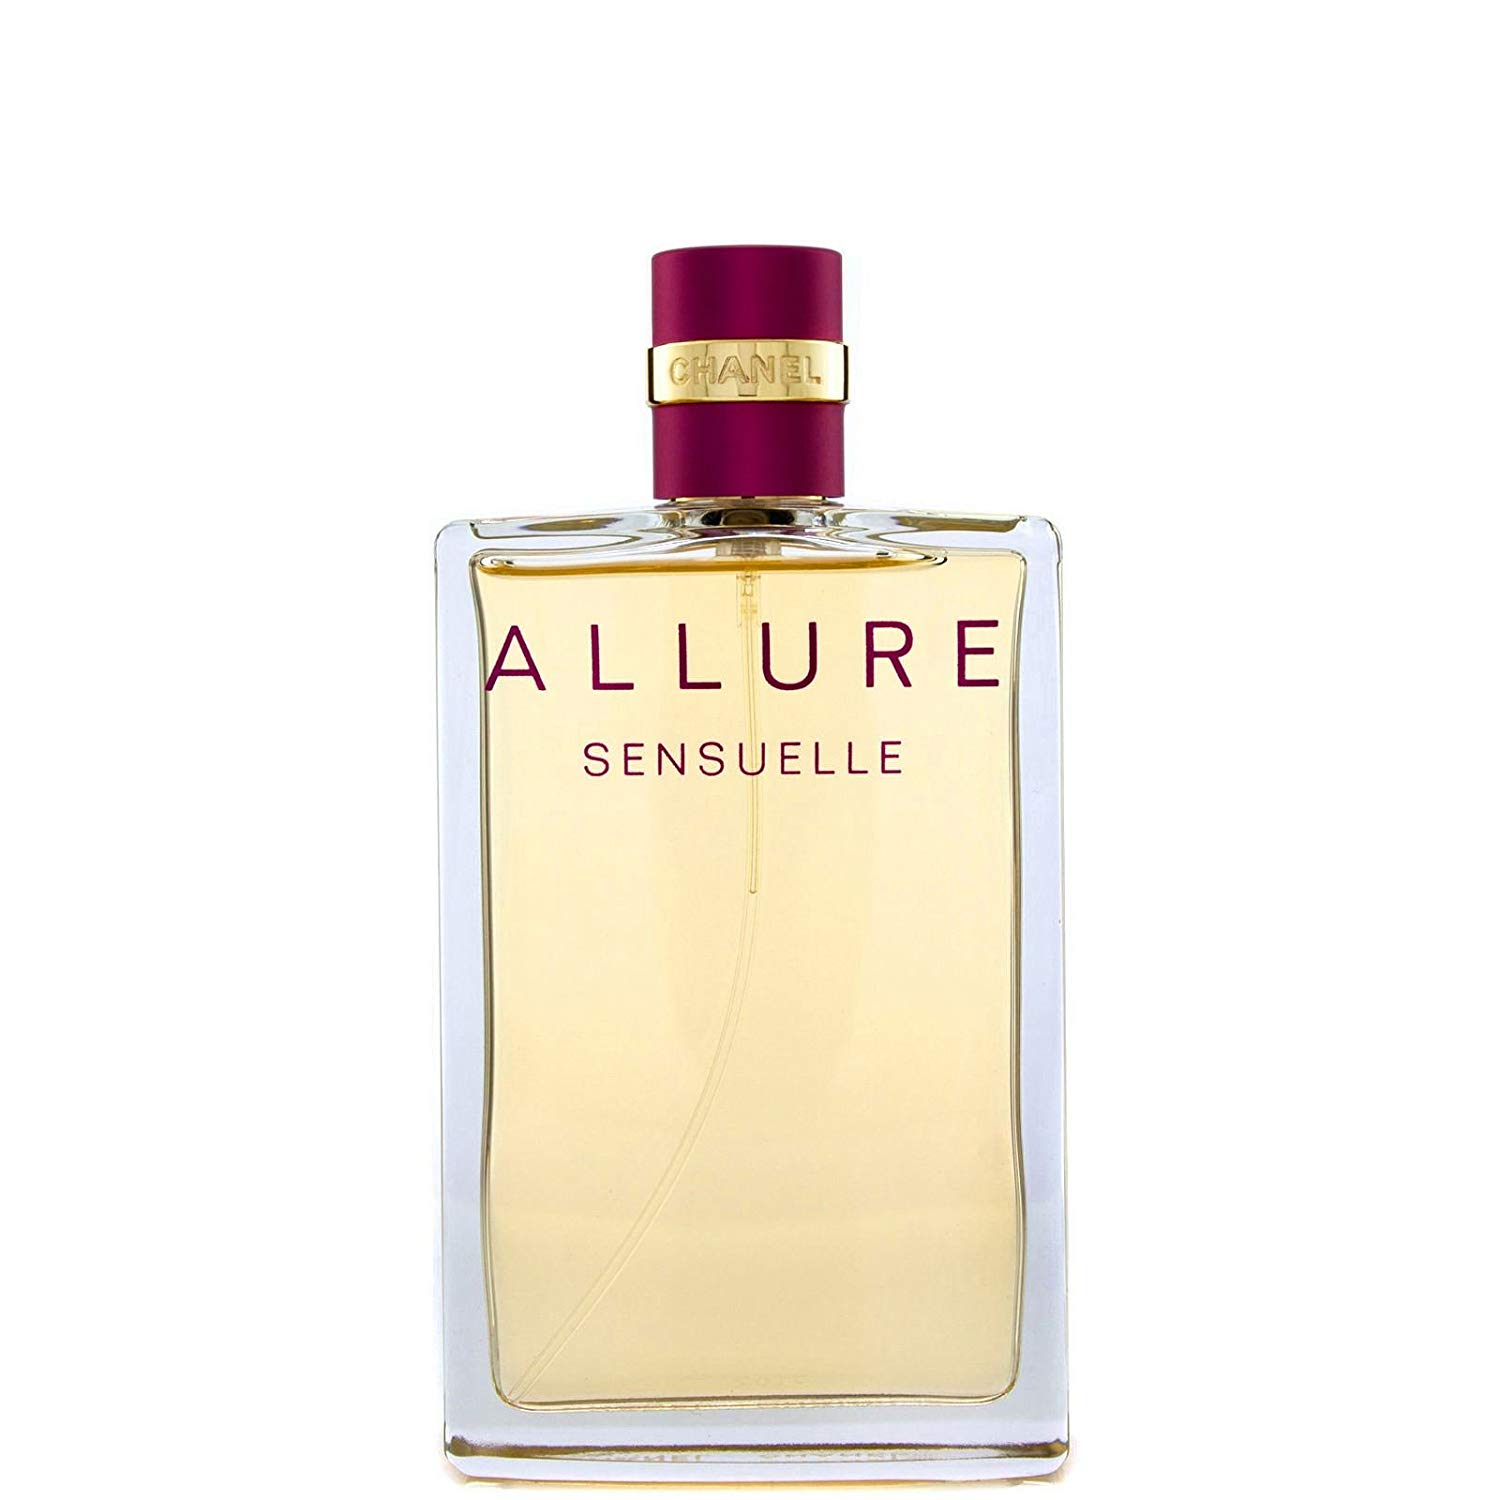 Chanel Allure Sensuelle Eau de Parfum for Women, 50ml - UPC: 3145891297201